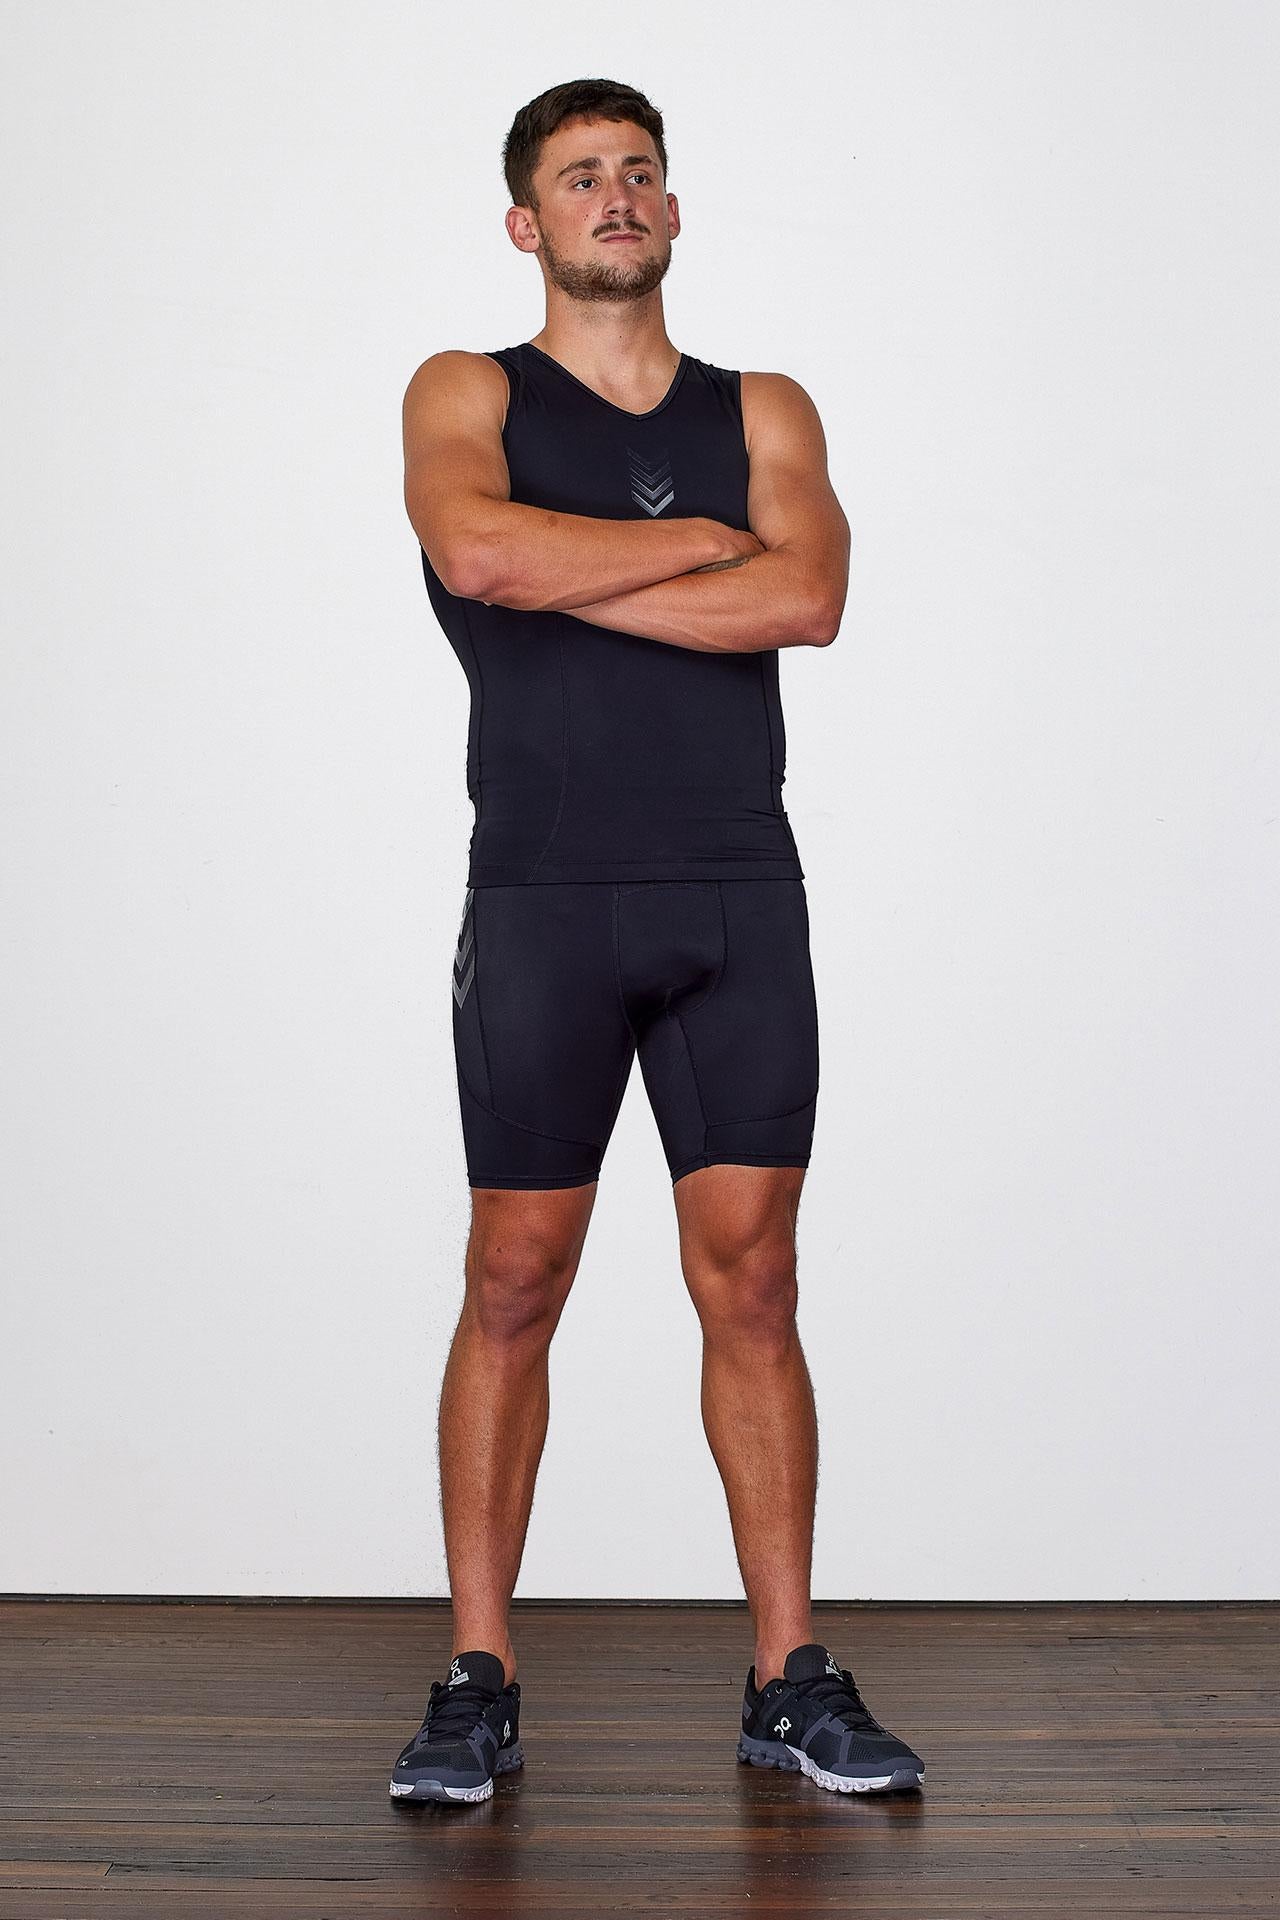 BASE Men's Compression Shorts - Black - Adelaide 36ers